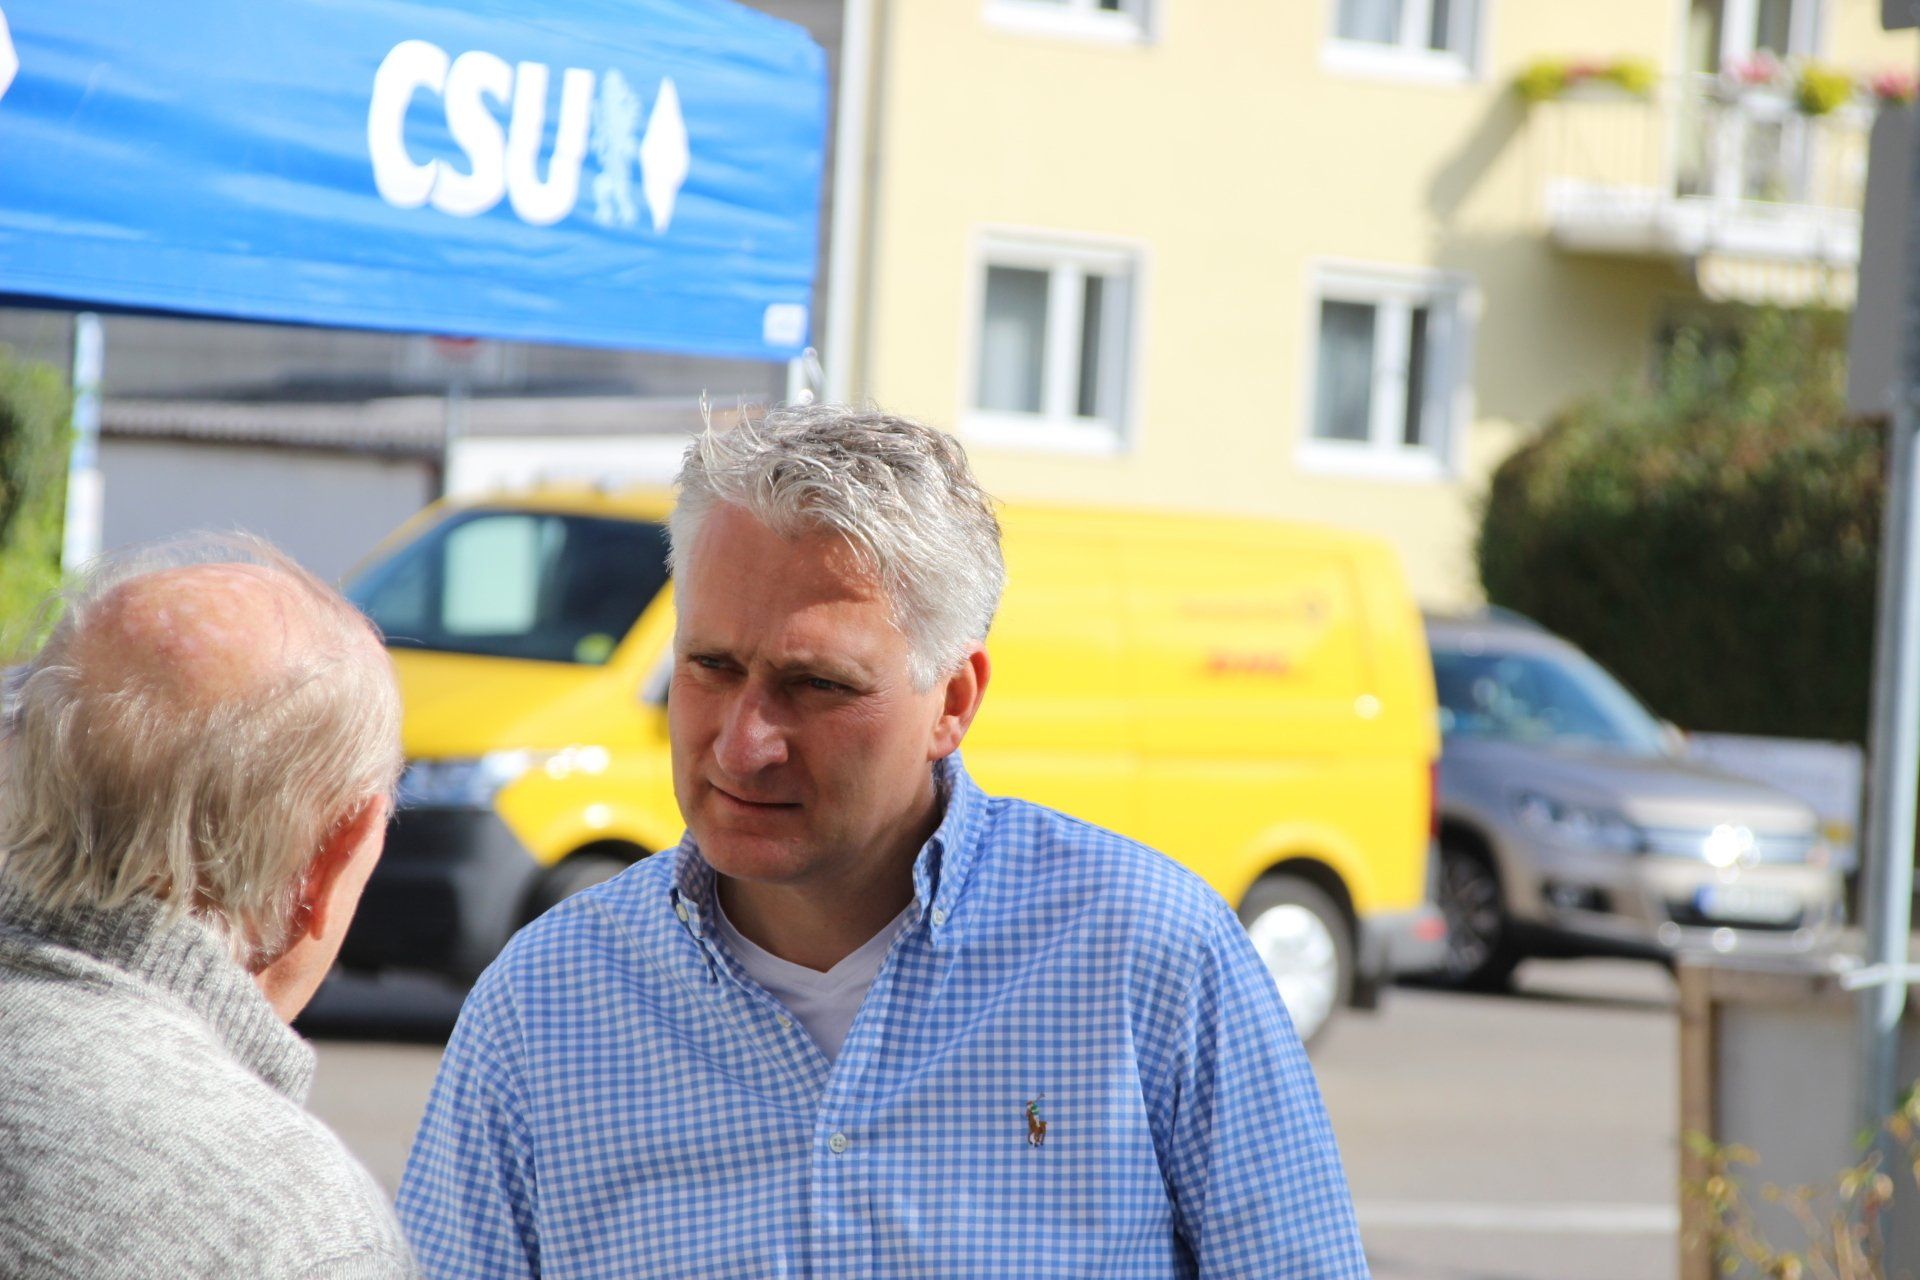 CSU-Infostand in Aystetten mit Hansjörg Durz